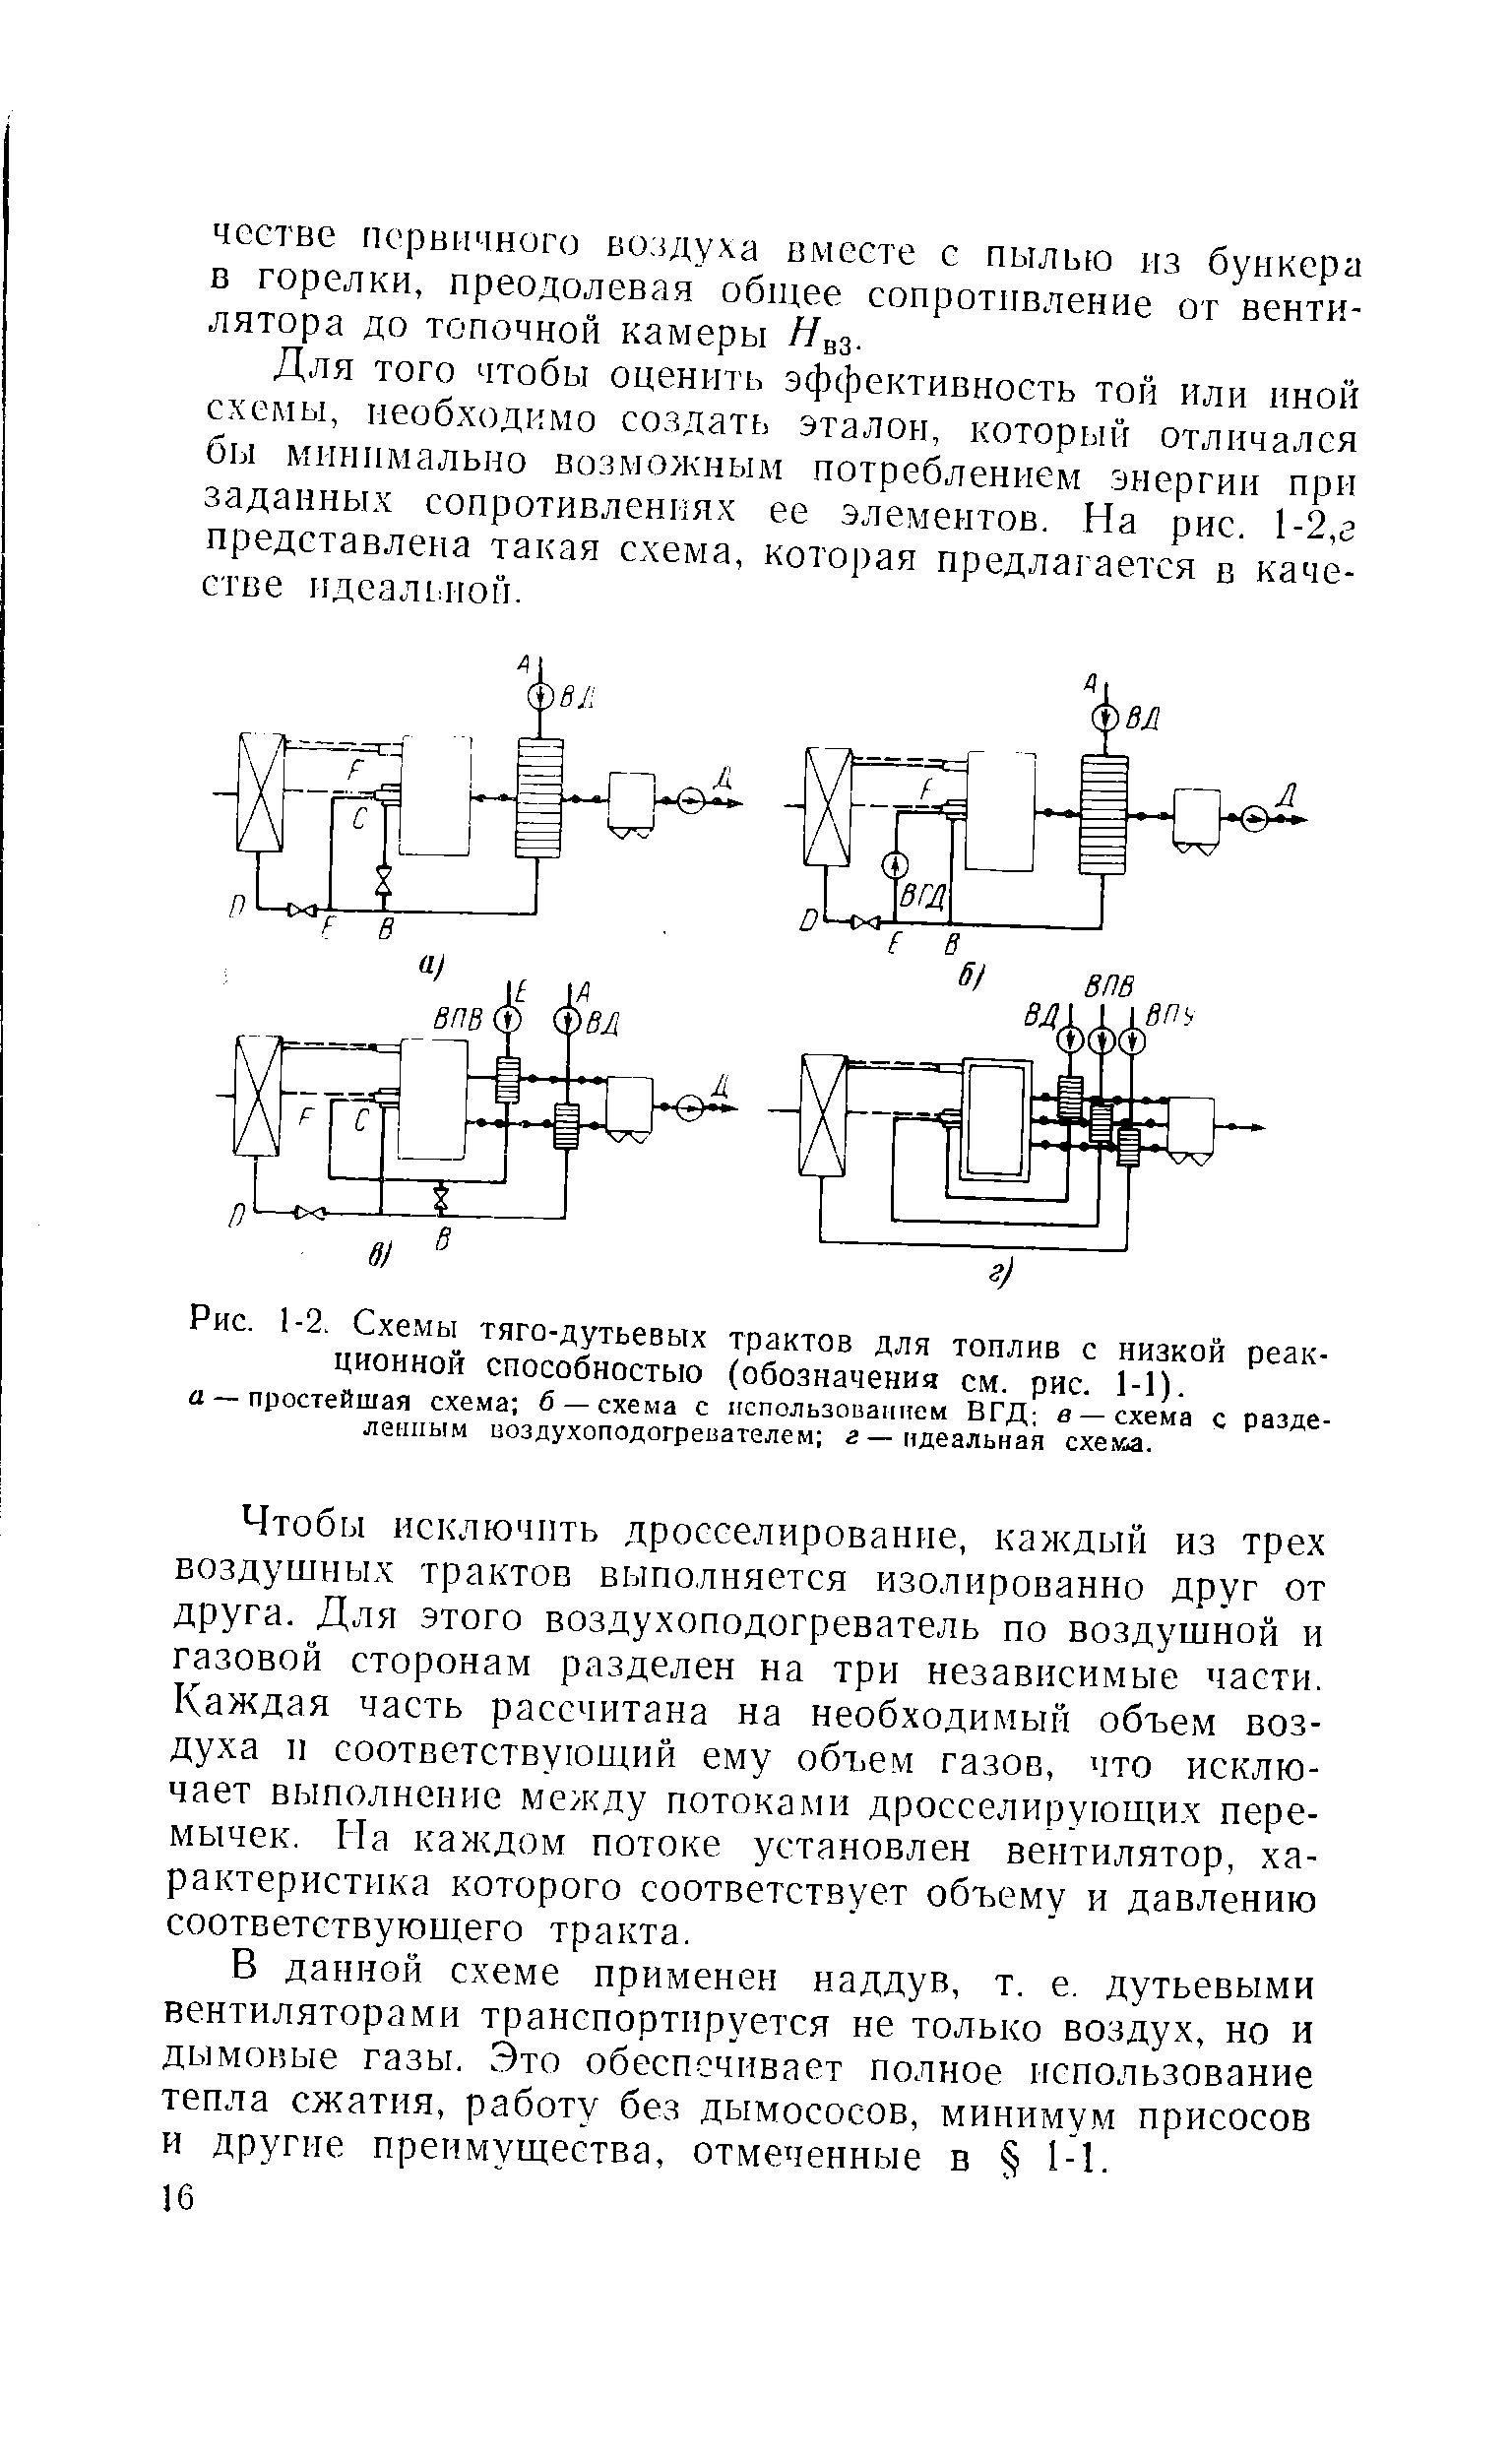 Рис. 1-2. Схемы тяго-дутьевых трактов для топлив с низкой реакционной способностью (обозначения см. рис. 1-1).
